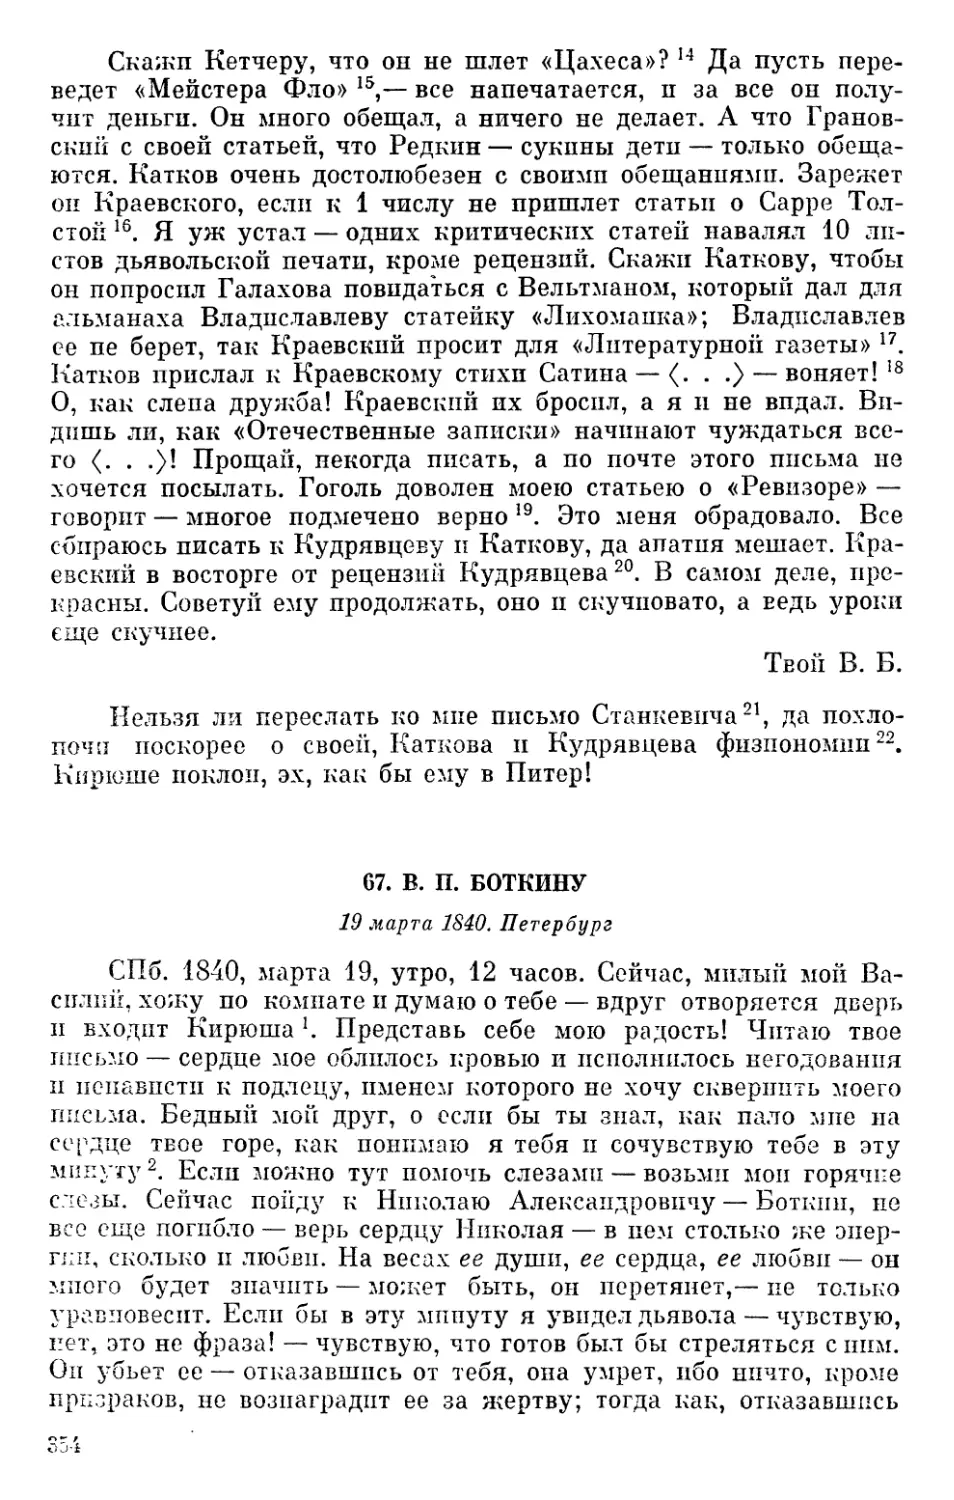 67. В. П. Боткину. 19 марта 1840